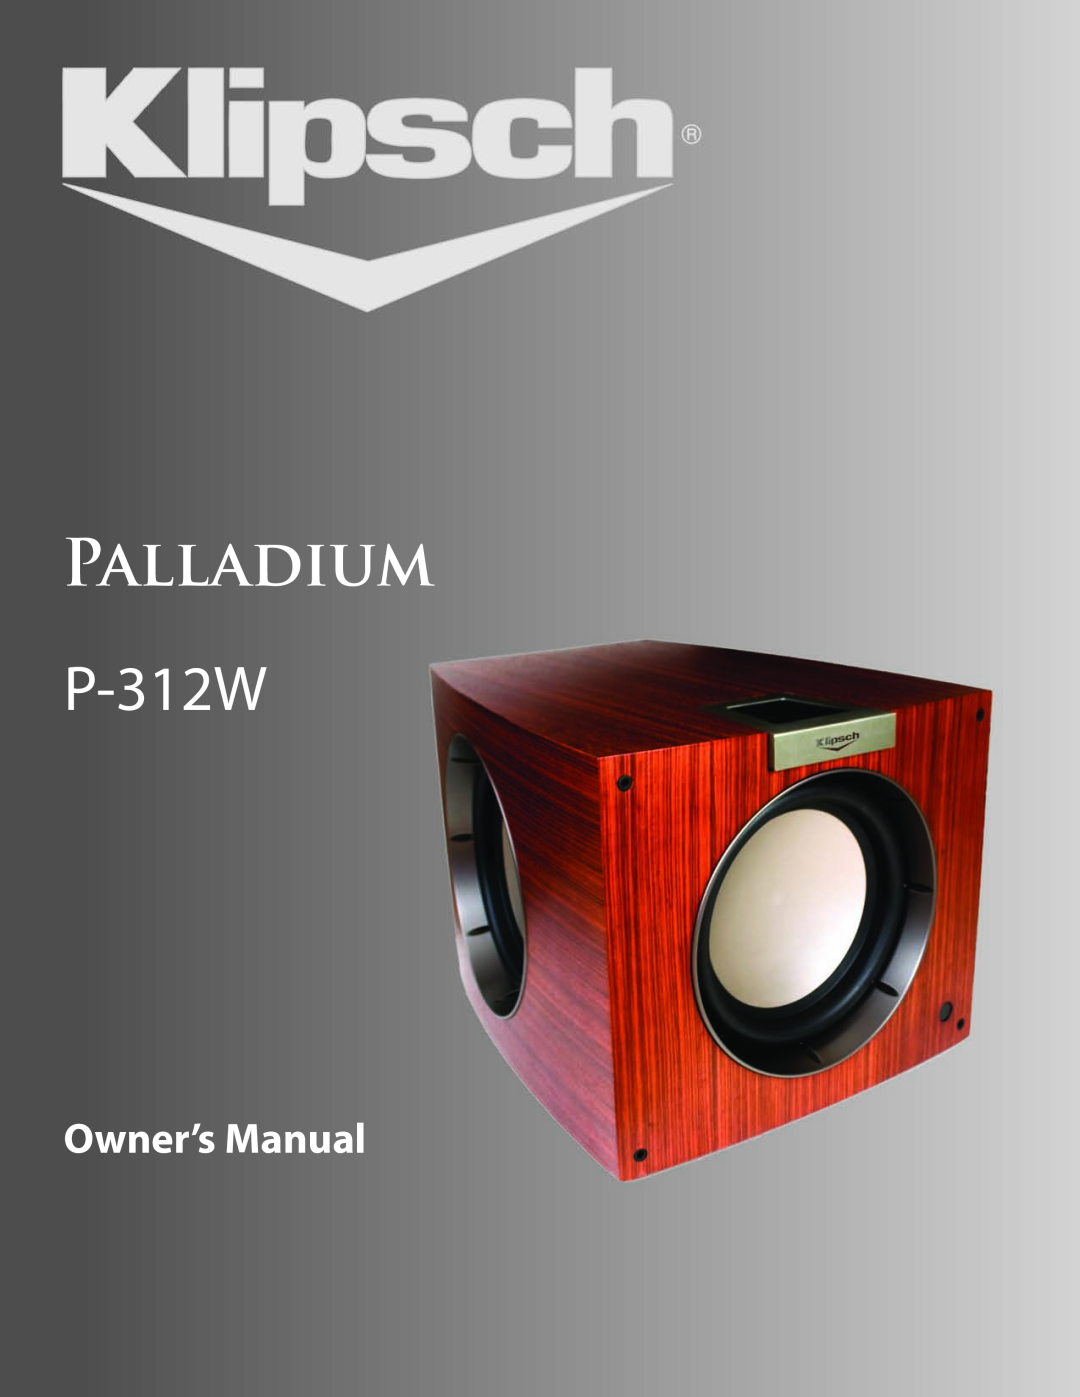 Klipsch owner manual PALLADIUM P-312W 